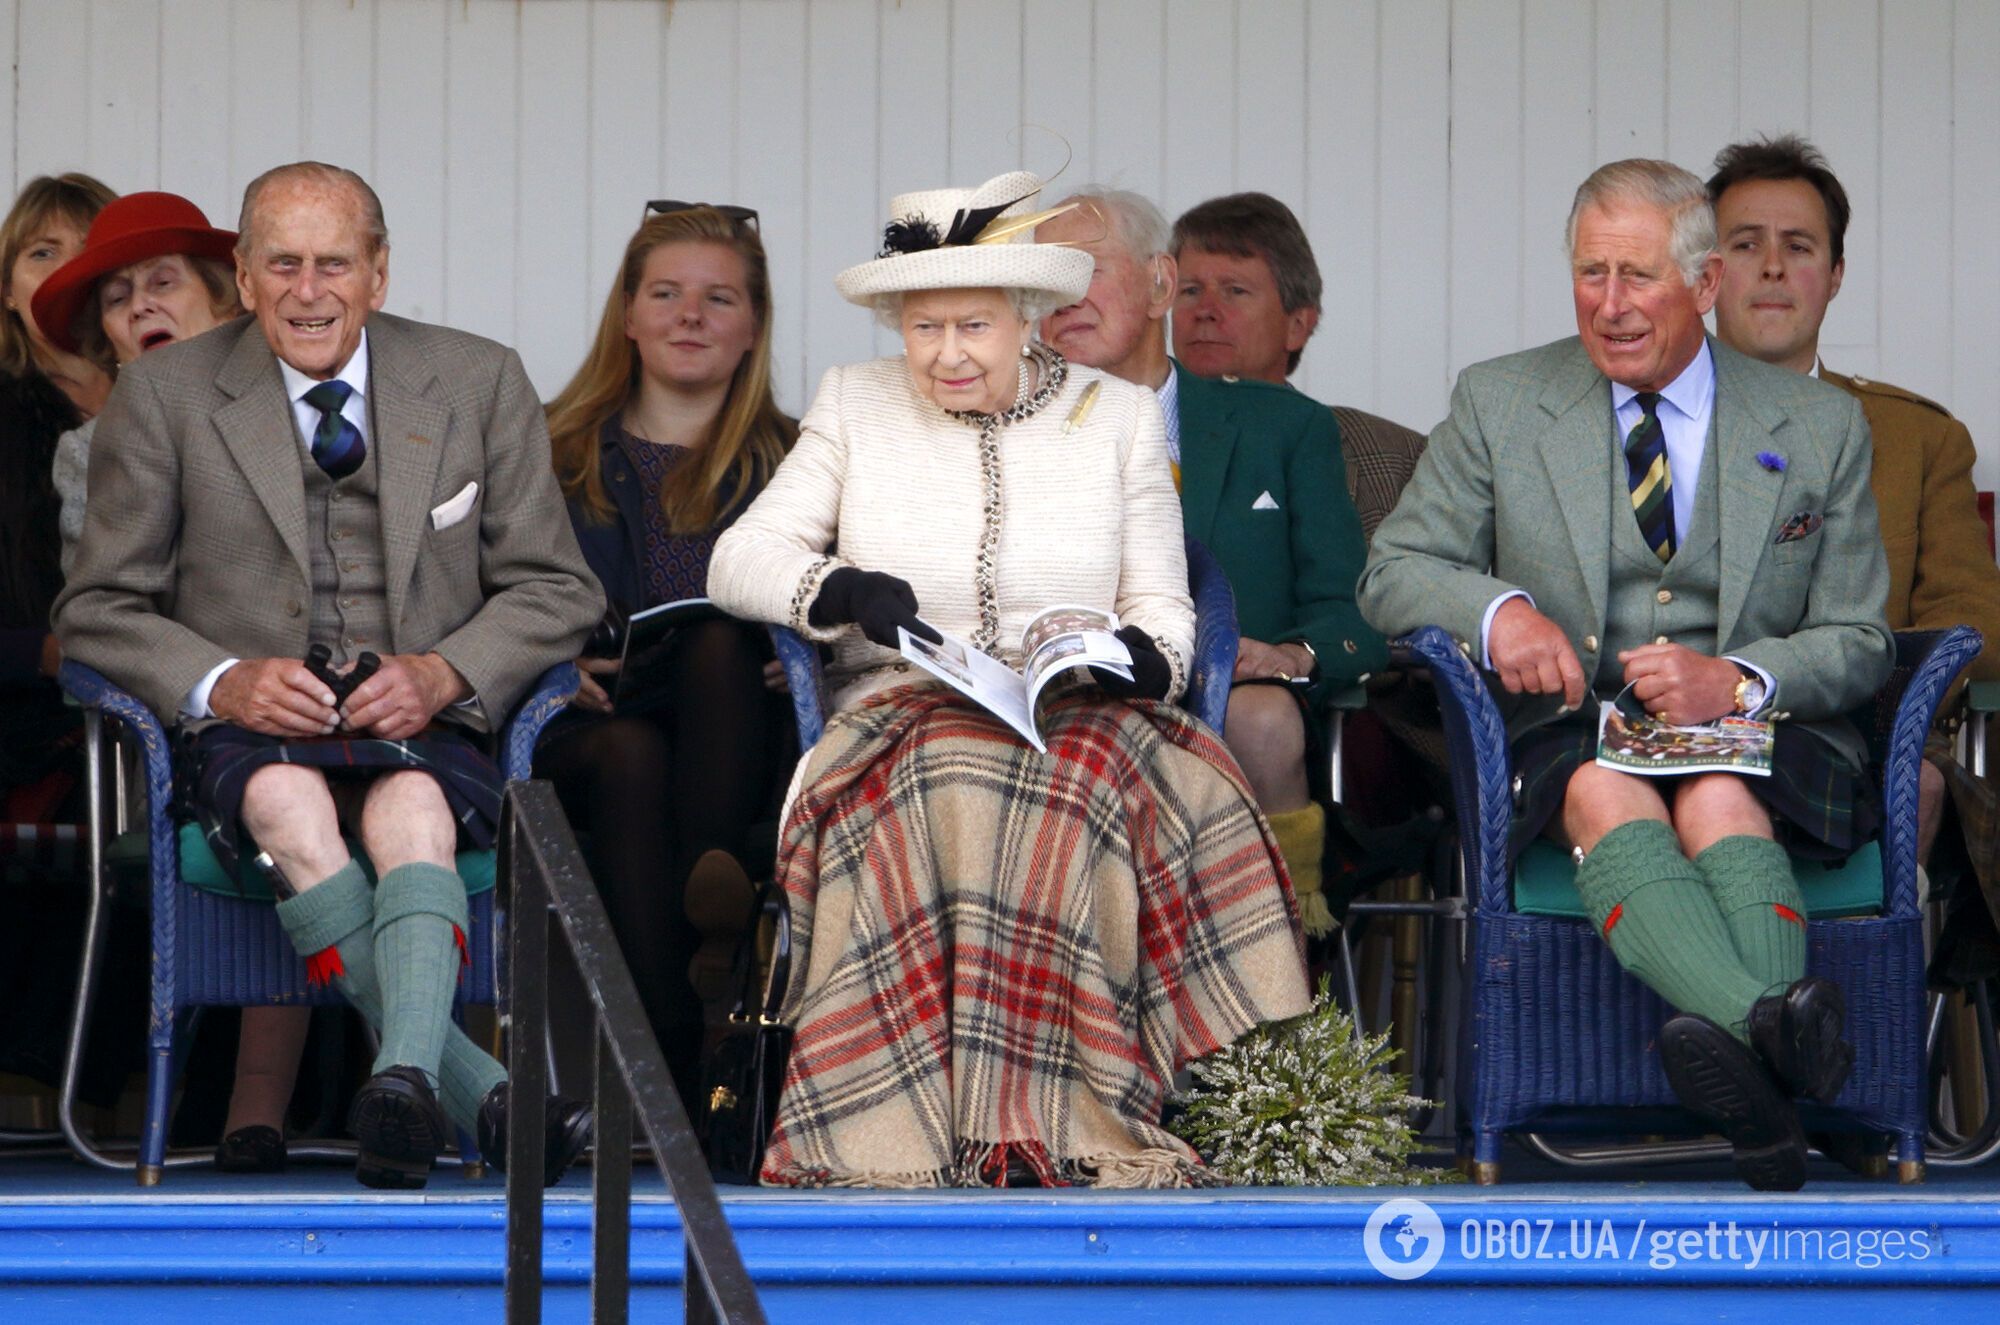 "Британский шарм" или провал в выборе одежды? 5 конфузов королевских особ. Фото